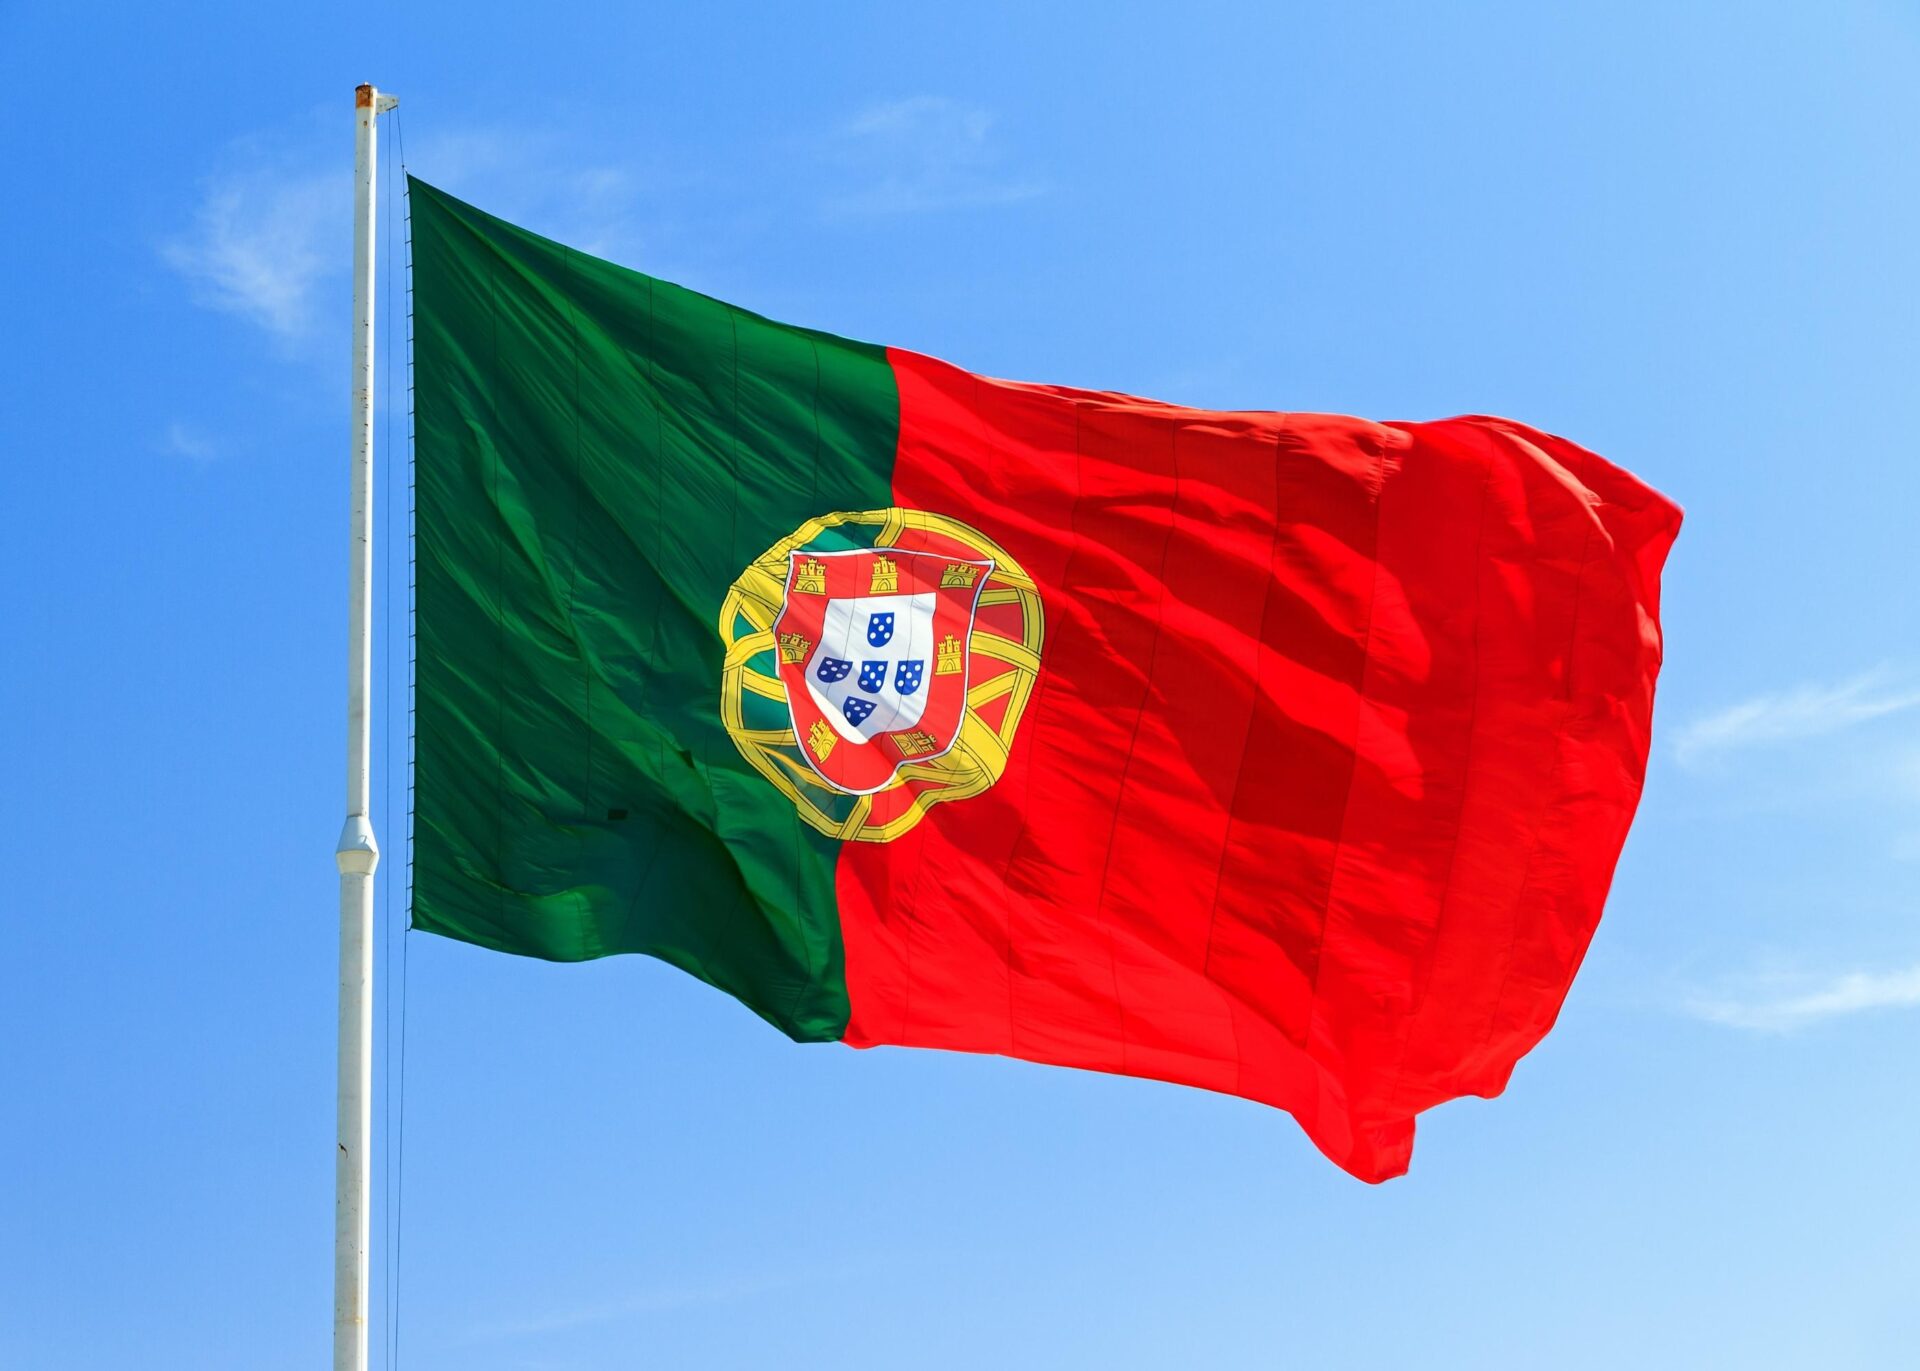 Novo espaço informativo com a informação essencial sobre casinos em Portugal